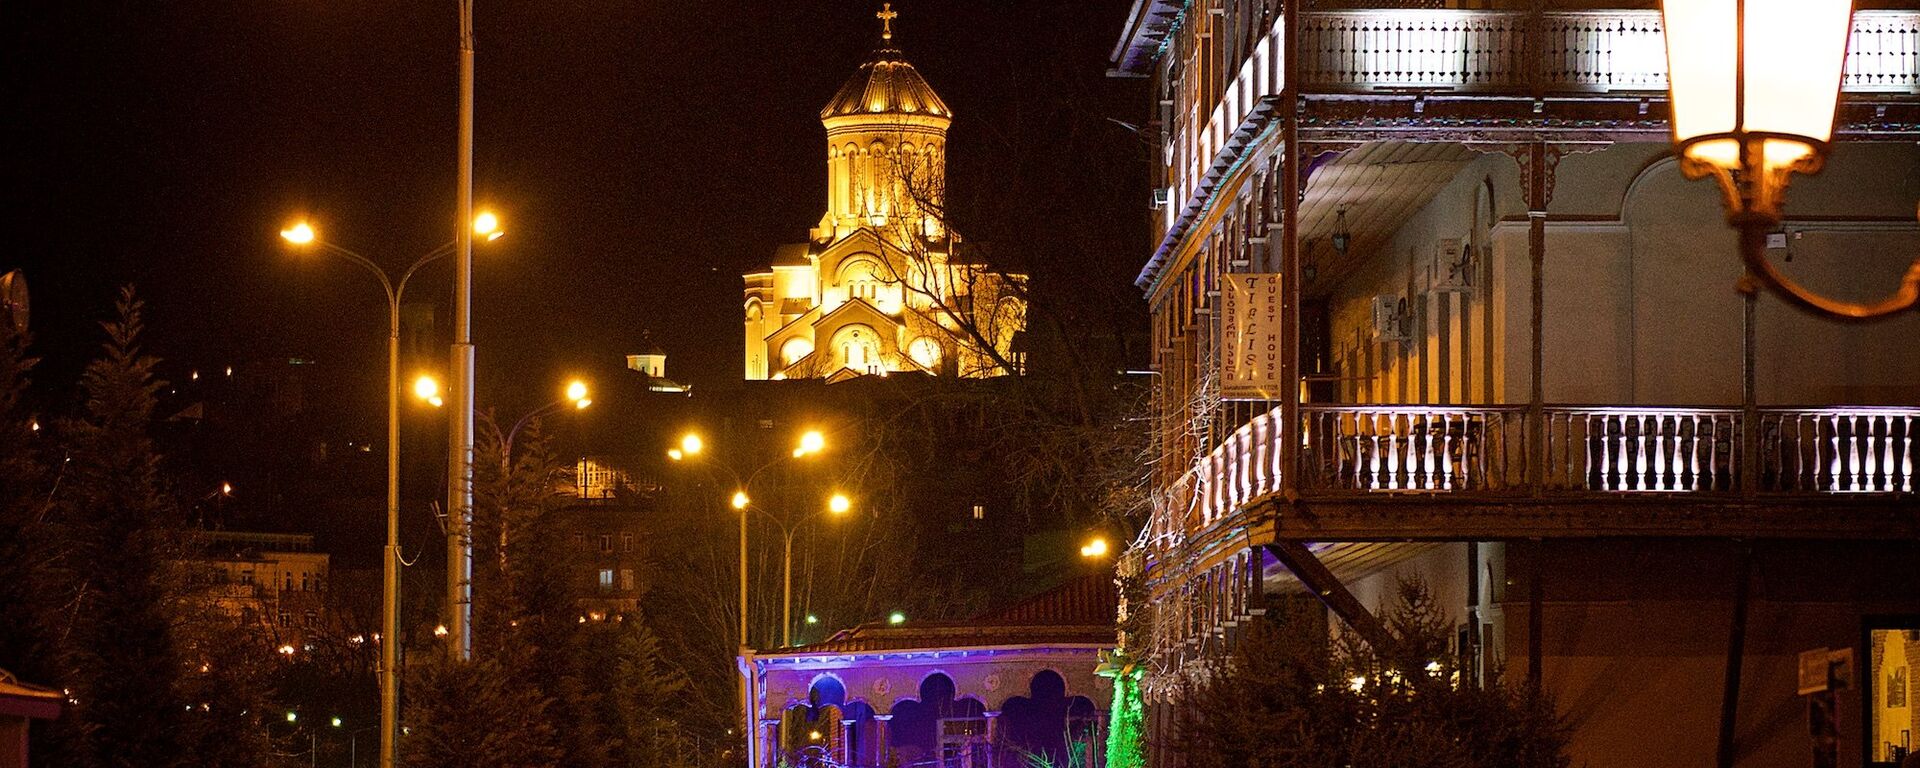 Вид на старый Тбилиси и храм Святой Троицы Самеба ночью - Sputnik Грузия, 1920, 15.02.2021